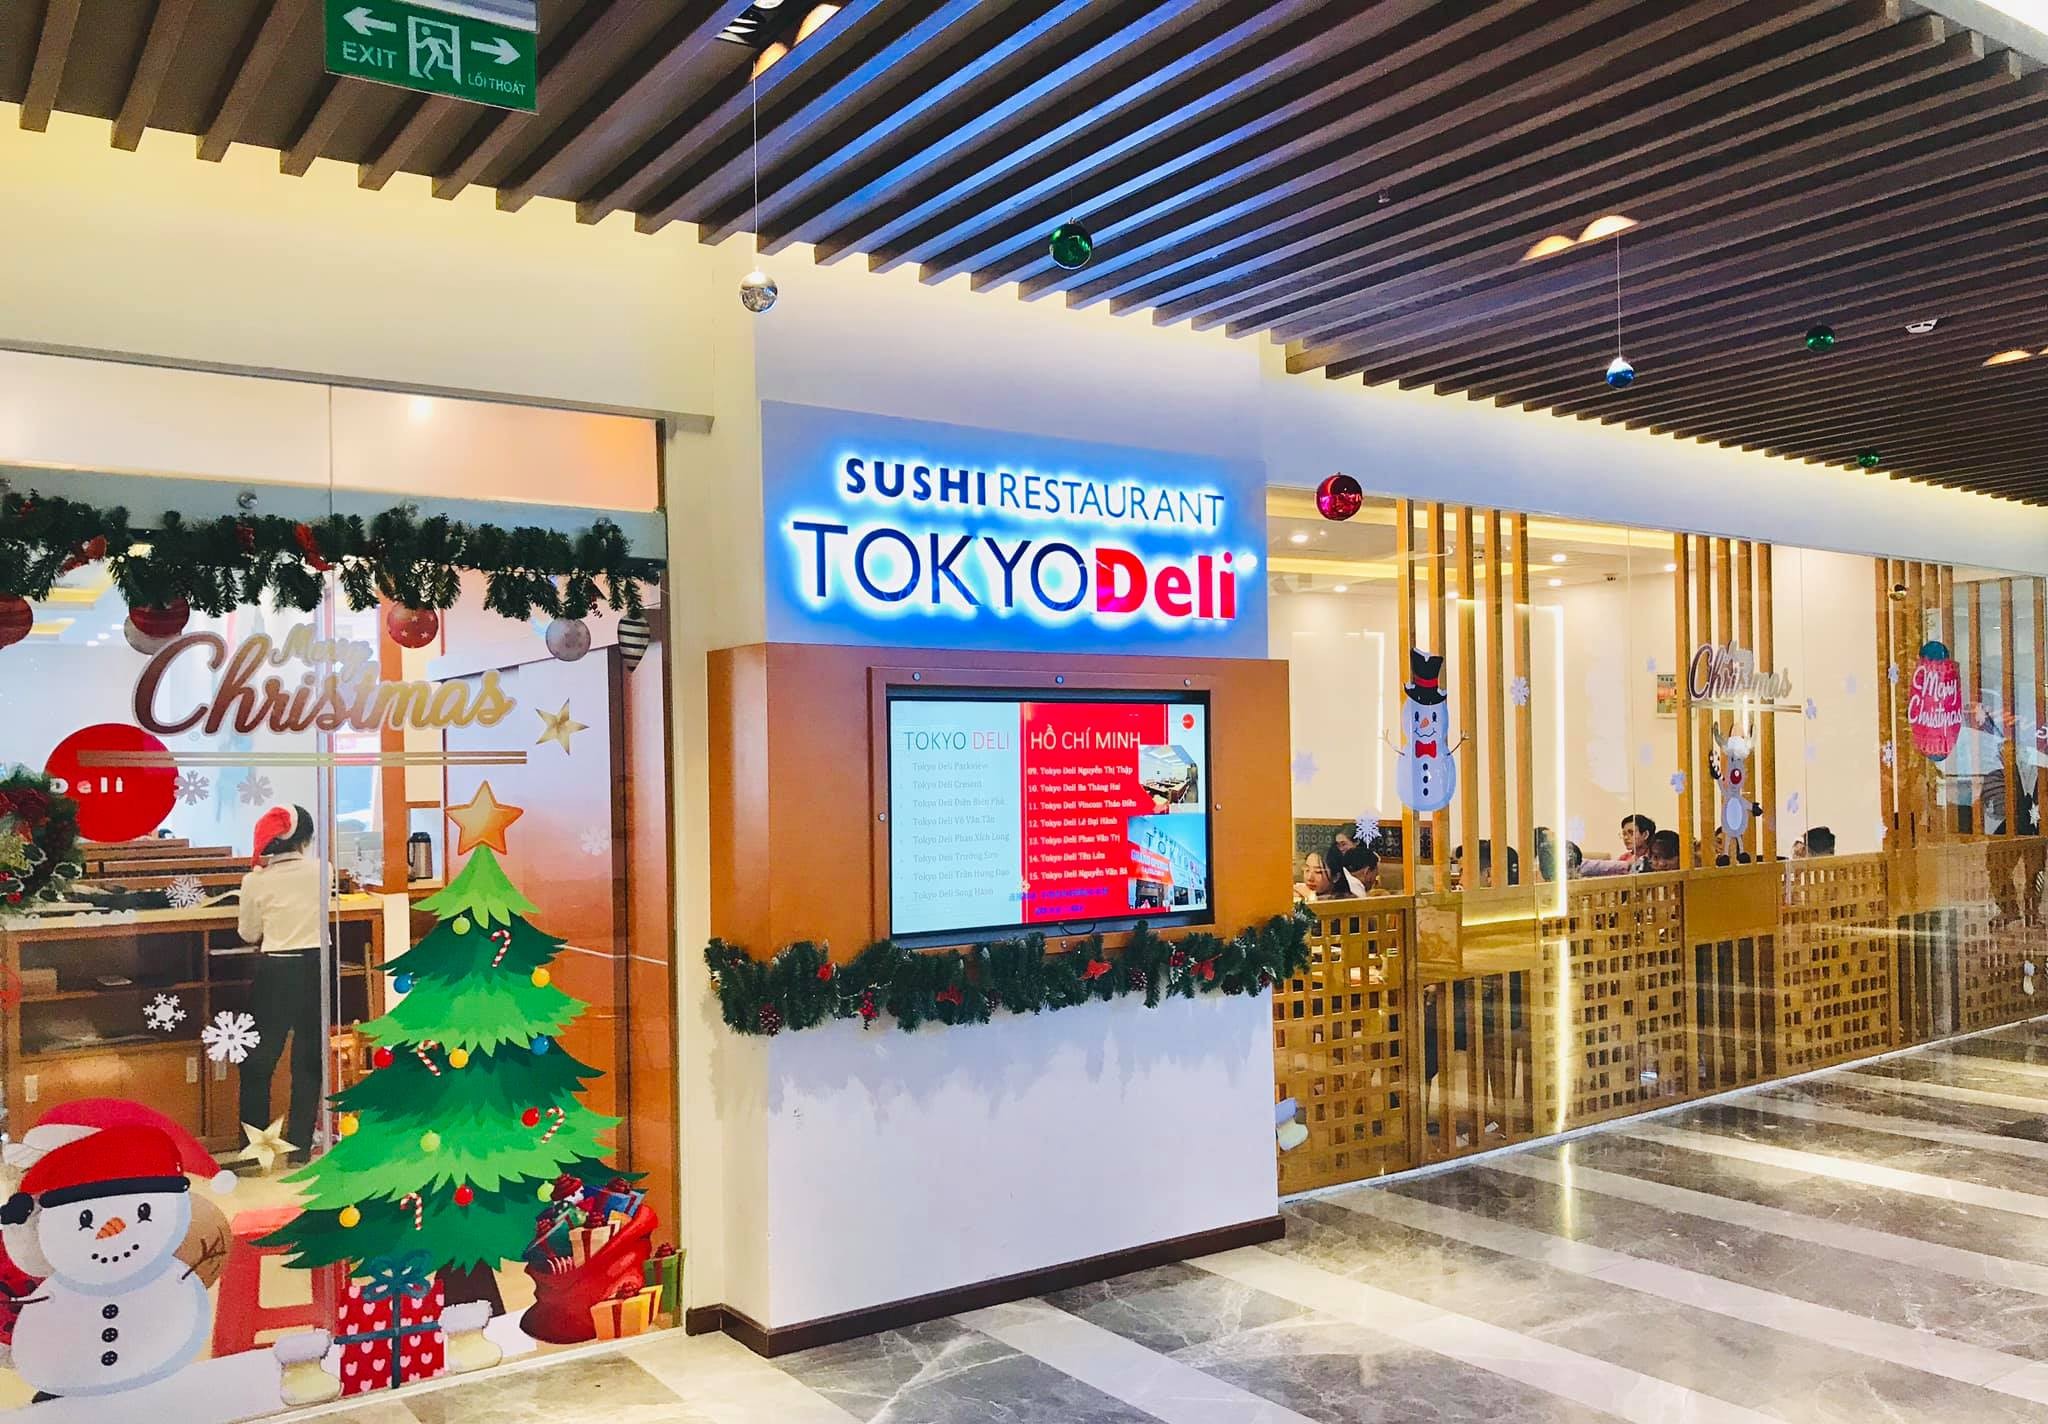 

Thực phẩm Tân Việt Nhật chính là chuỗi nhà hàng Tokyo Deli - đây chính là thương hiệu quen thuộc về ẩm thực Nhật Bản ở Nhật Bản. Các chuỗi cửa hàng khác cũng kinh doanh ẩm thực Nhật Bản bao gồm Isushi và Daruma (của Golden Gate), Sushi Kei (của Redsun ITI)
